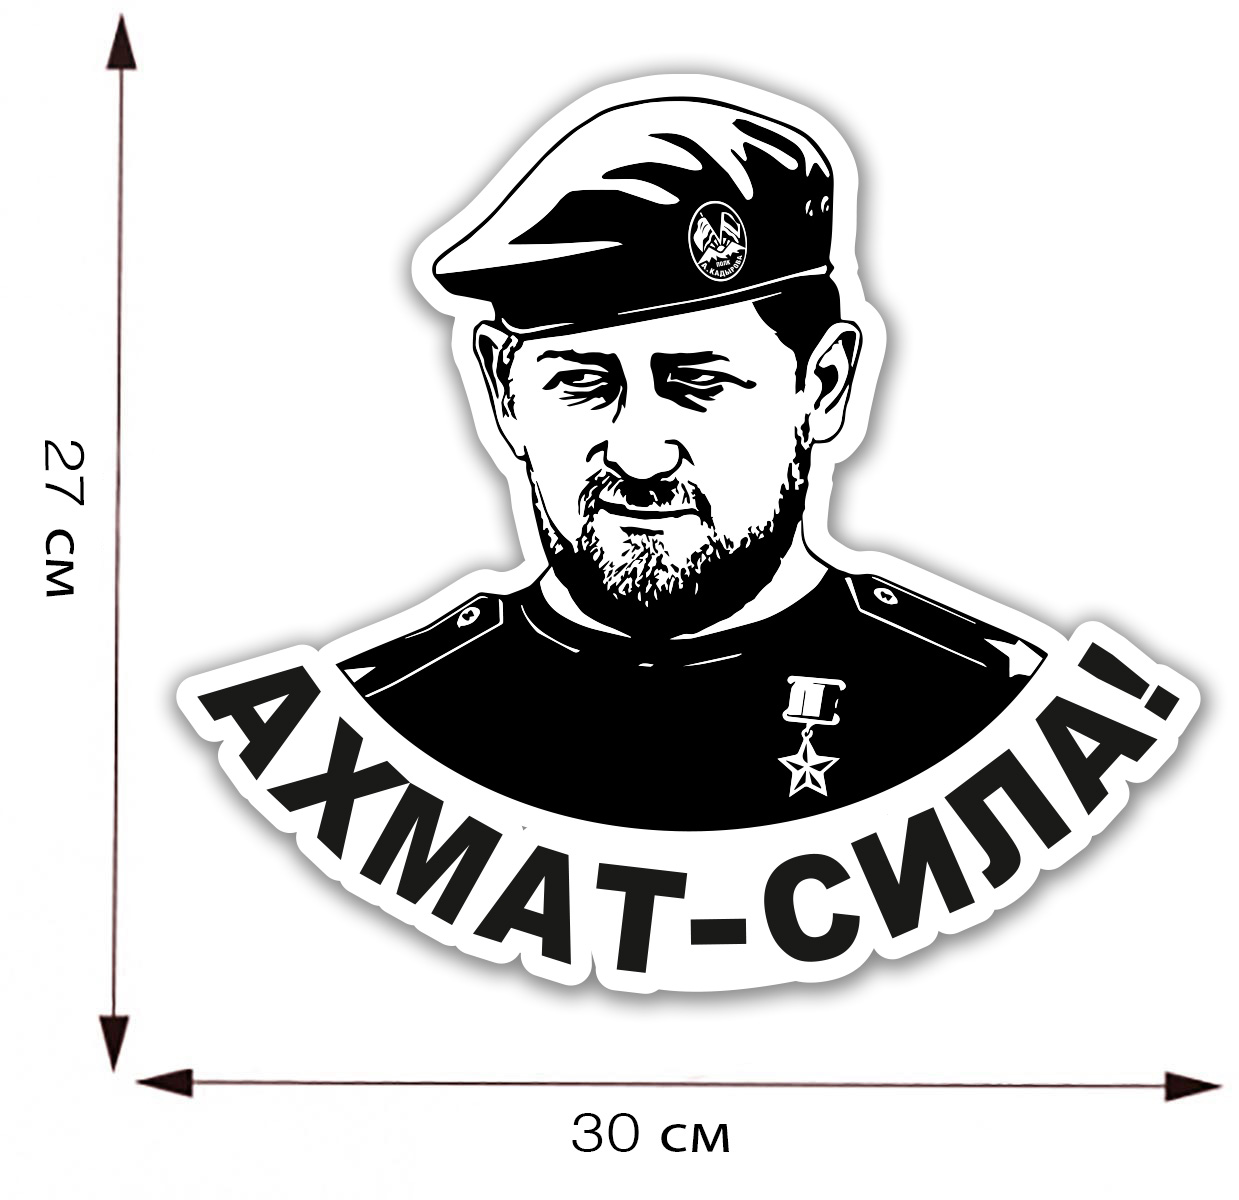 Автомобильная наклейка "Ахмат - Сила!" с портретом Рамзана Кадырова - размер